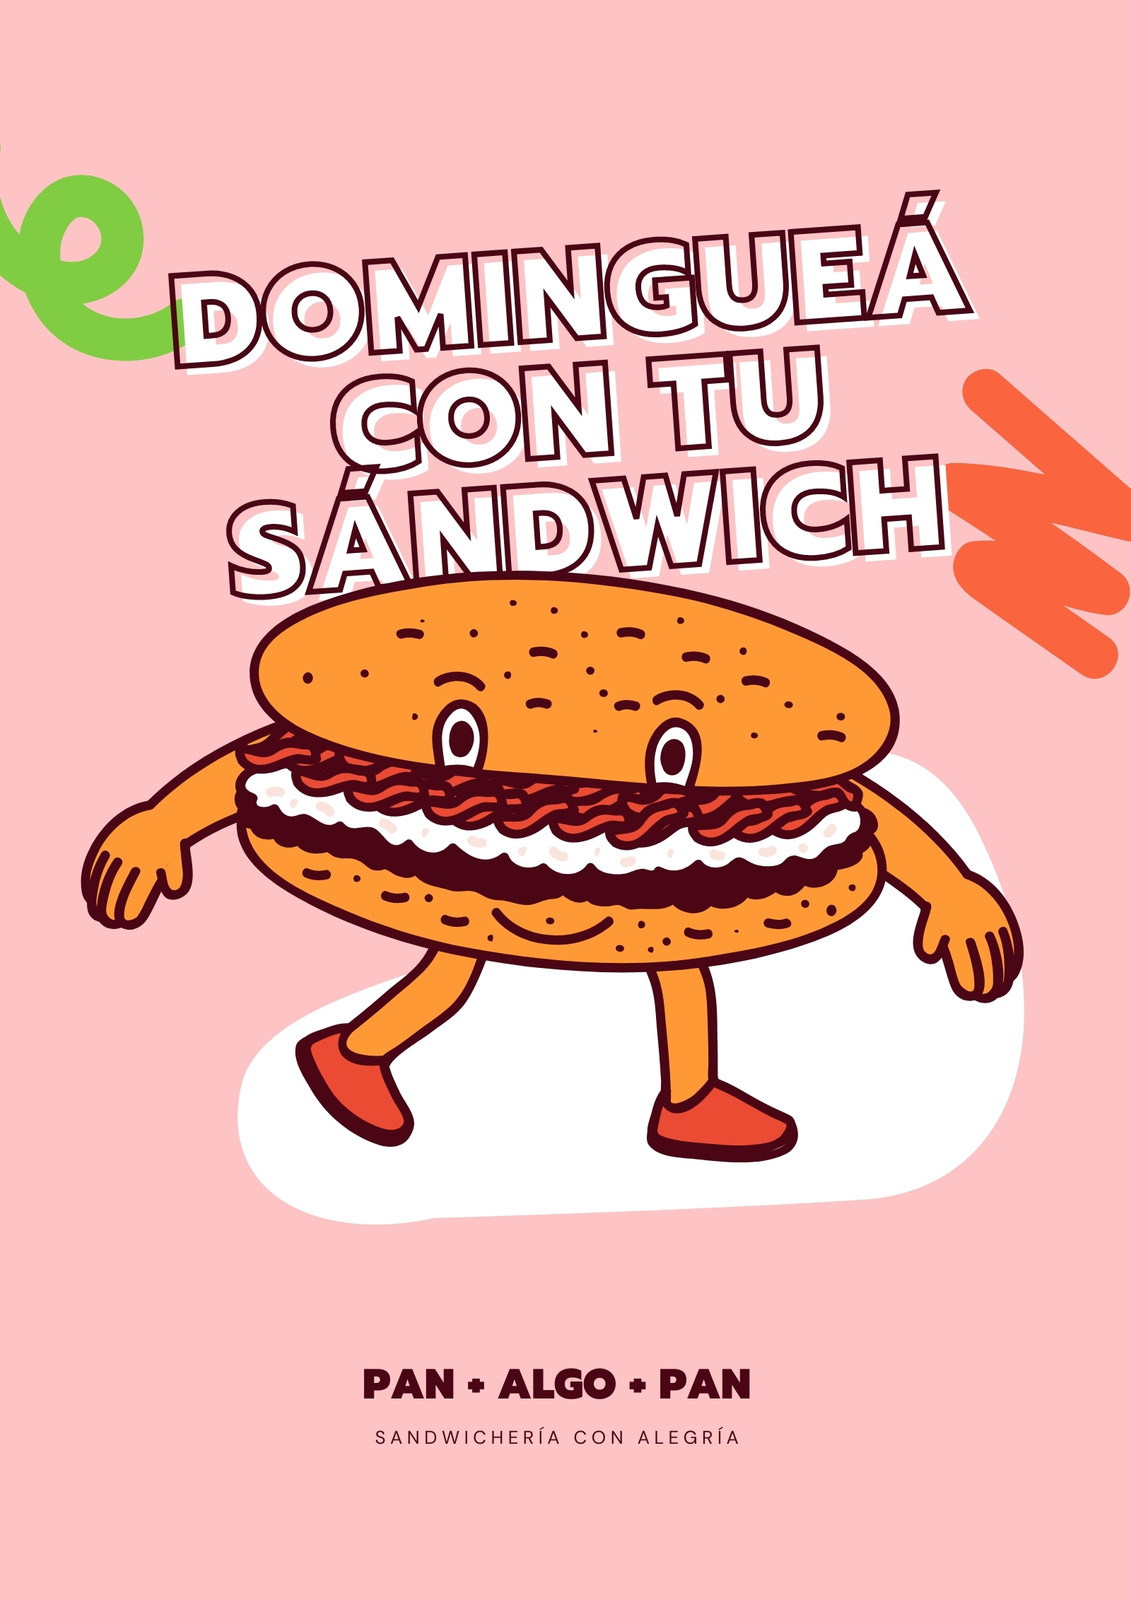 Flyer de diseño playful sobre servicio de delivery de sandwiches, color rosa rosa y borgoña con sandwich gigante ilustrado